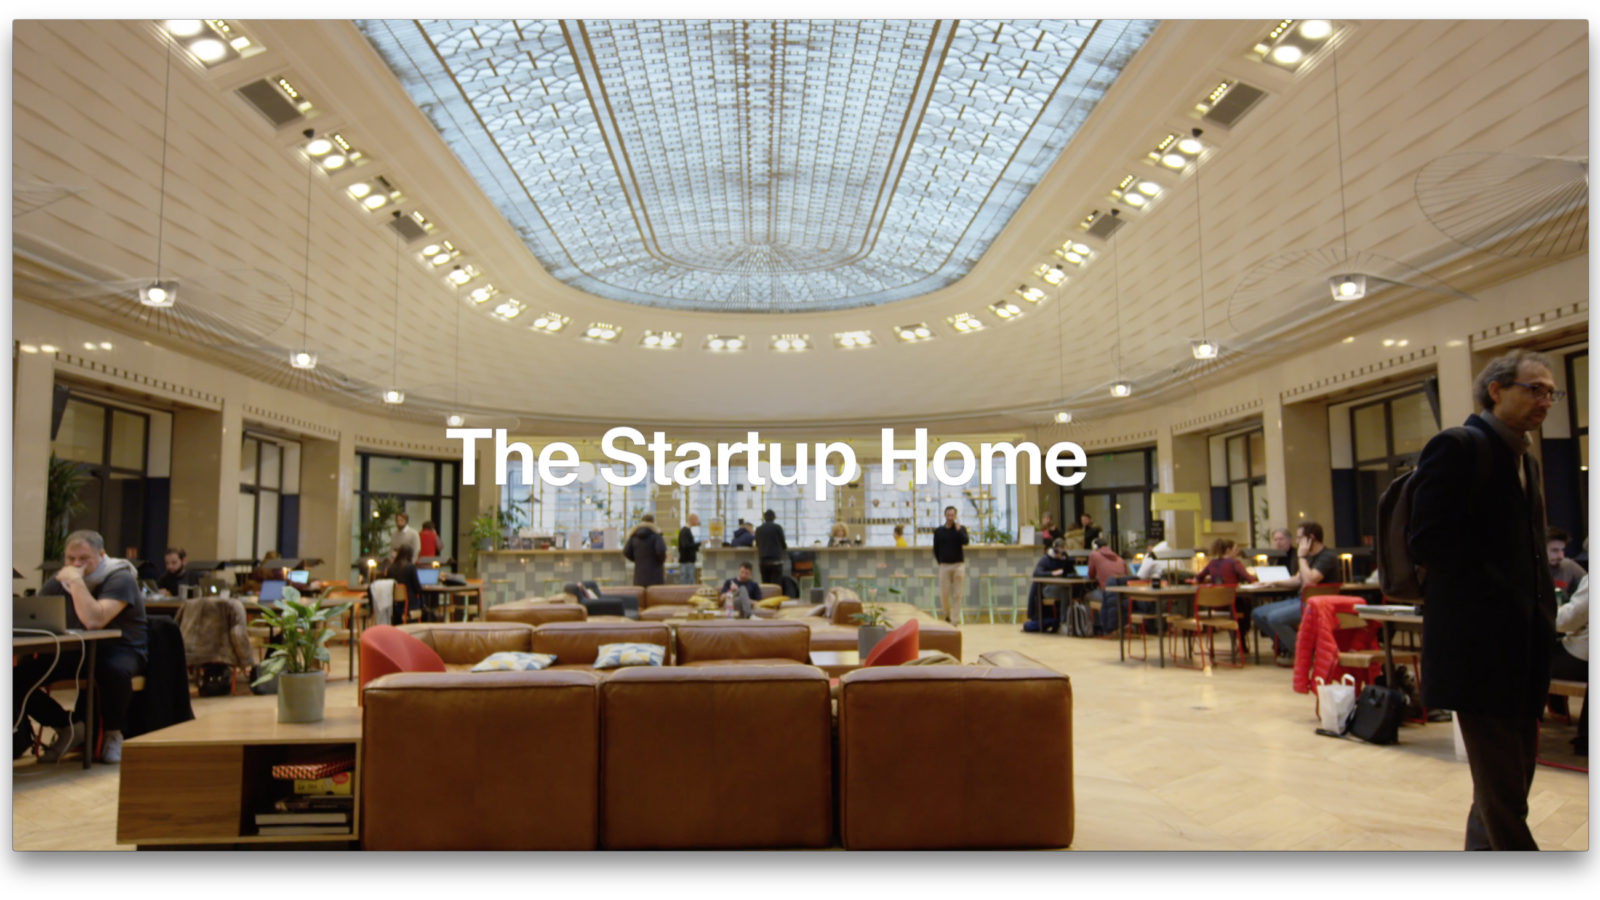 Willkommen zu Hause  Startups